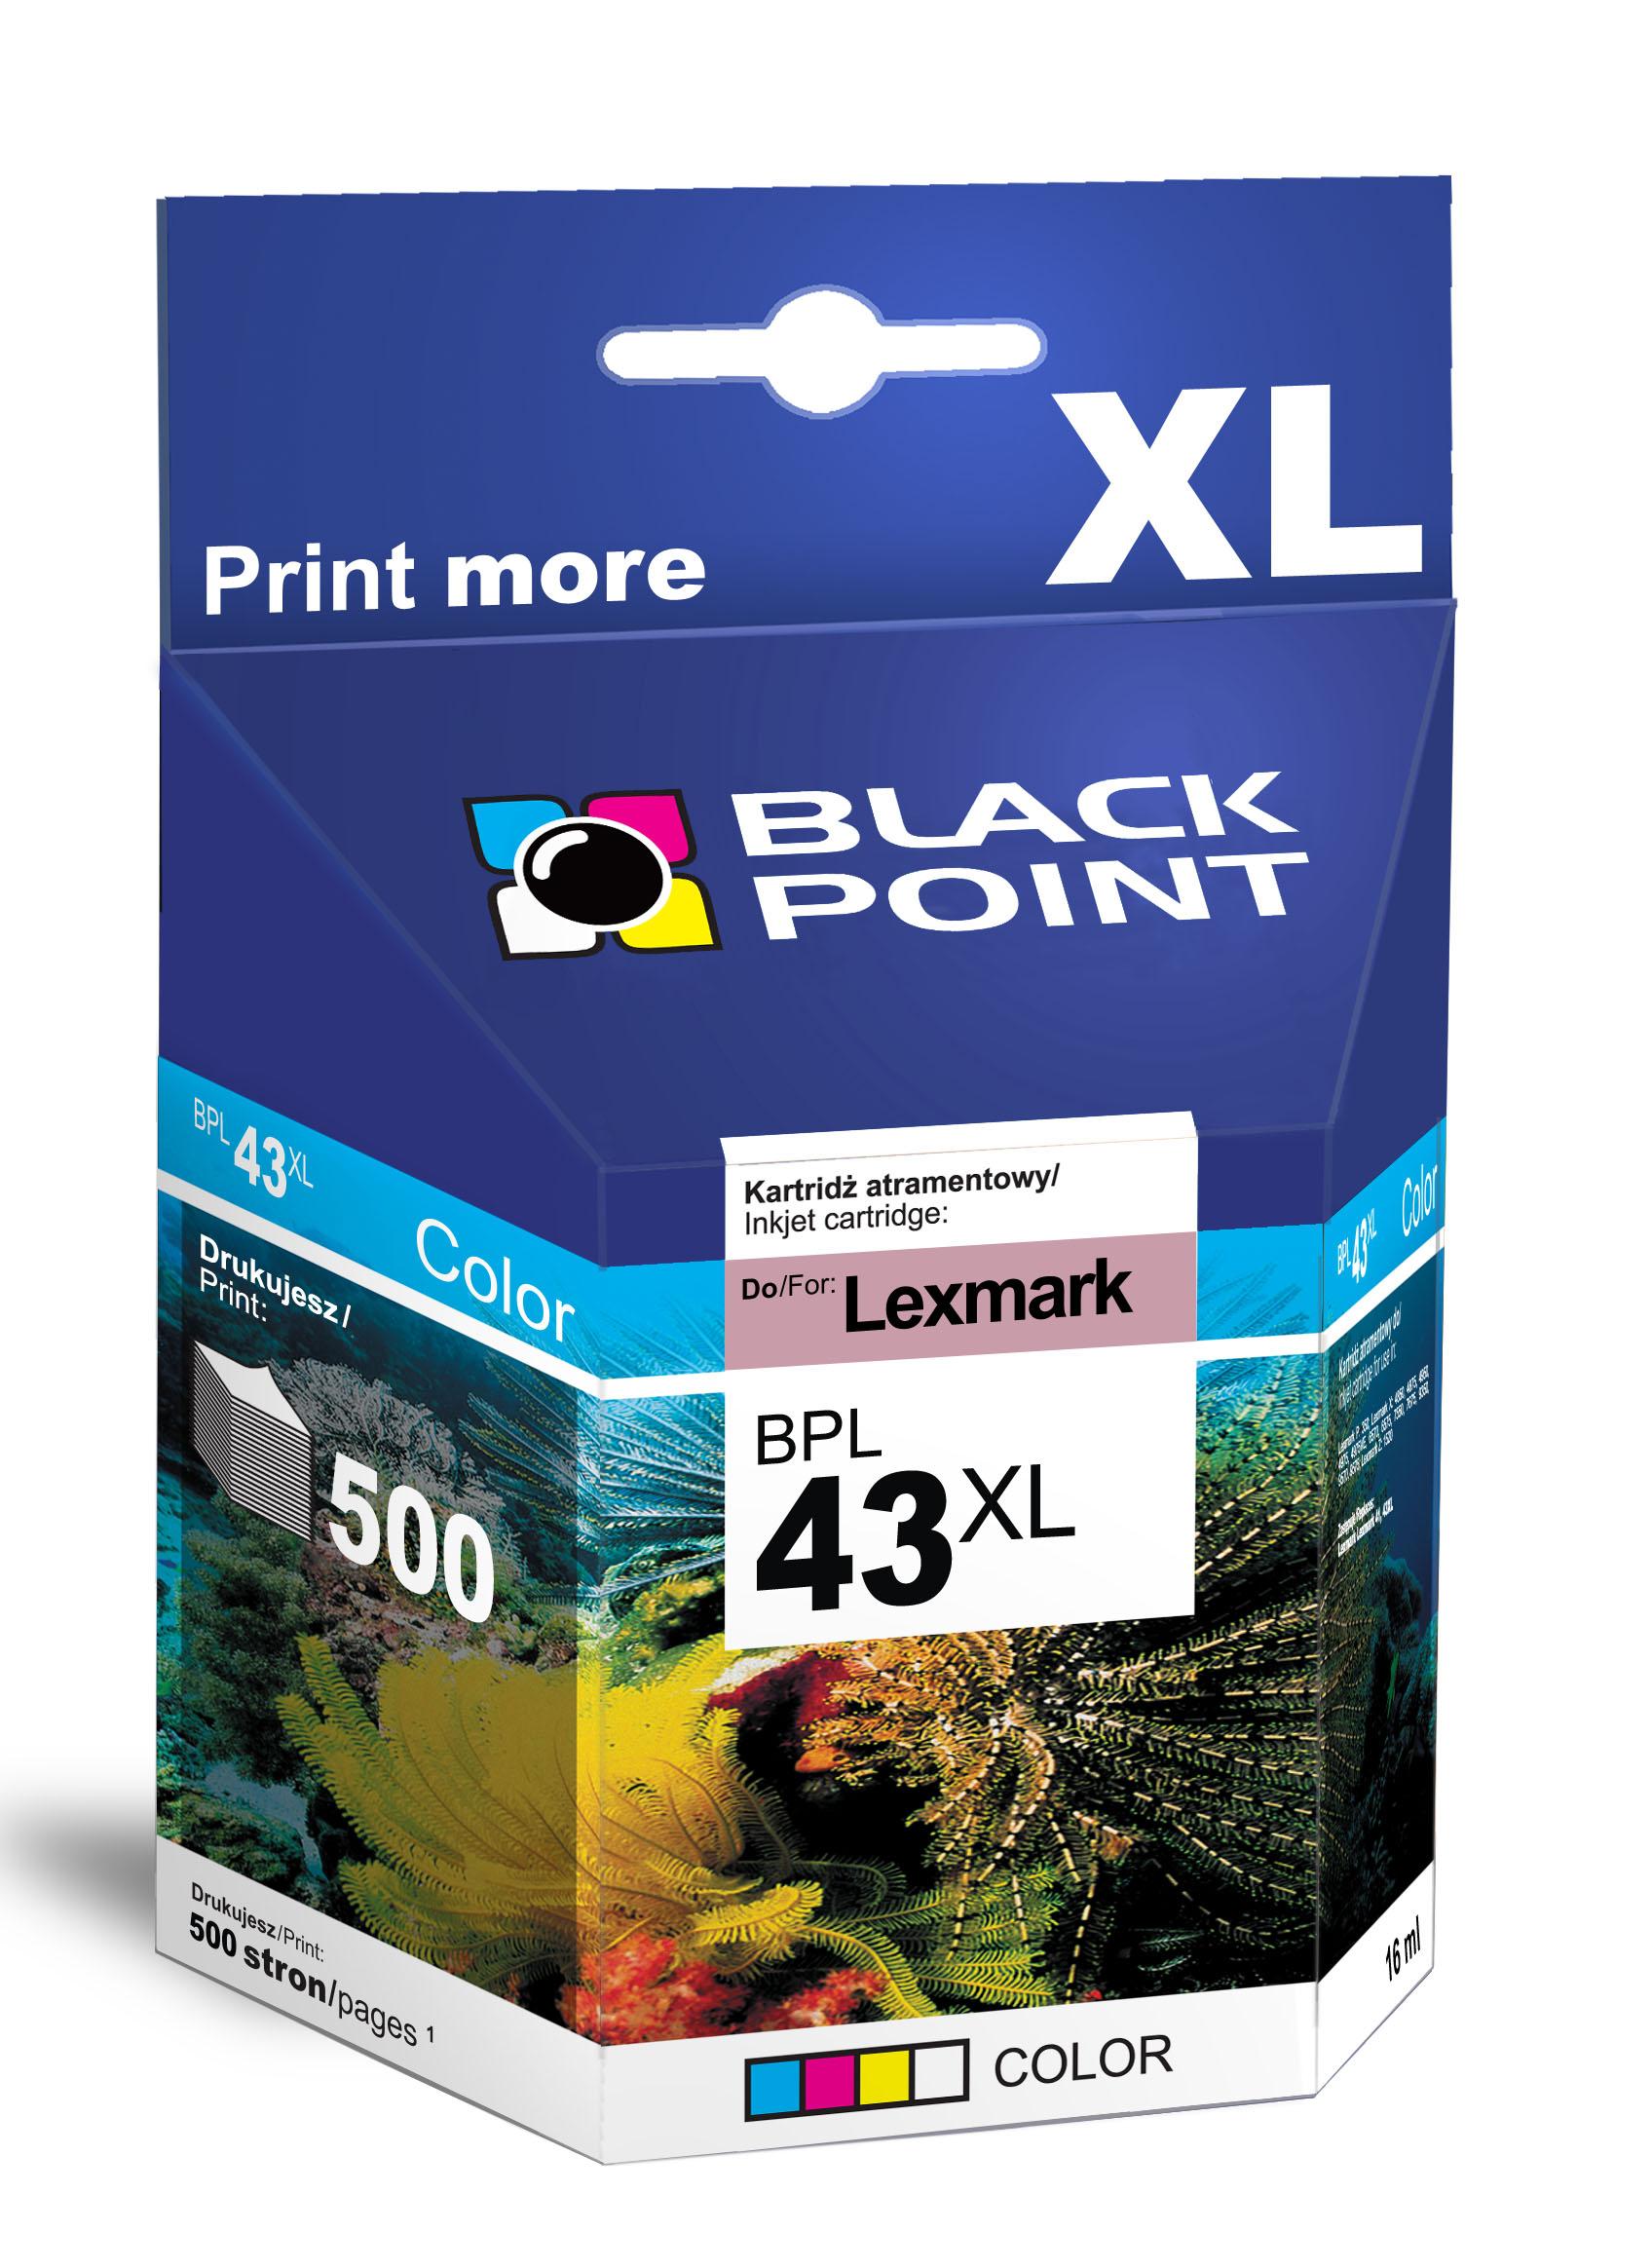 CMYK - Black Point tusz BPL43XL zastpuje Lexmark 18YX143E, trjkolorowy